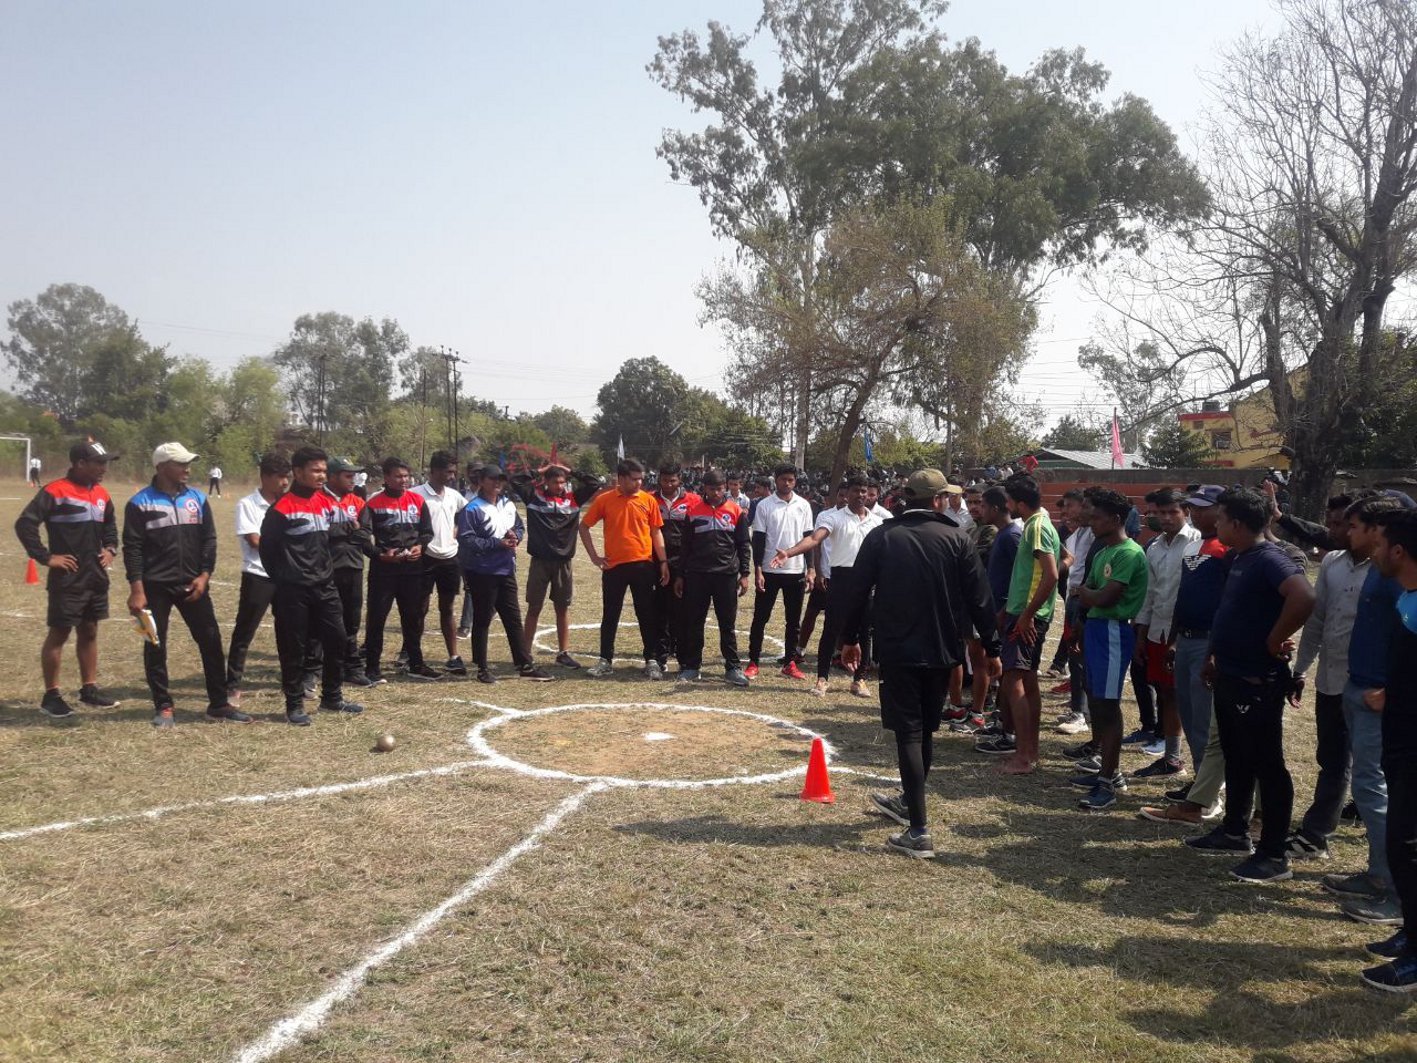 छात्रों ने ट्रैक पर लगाई दौड़ दिखाया जौहर विश्वविद्यालय में दो दिवसीय प्रतियोगिता